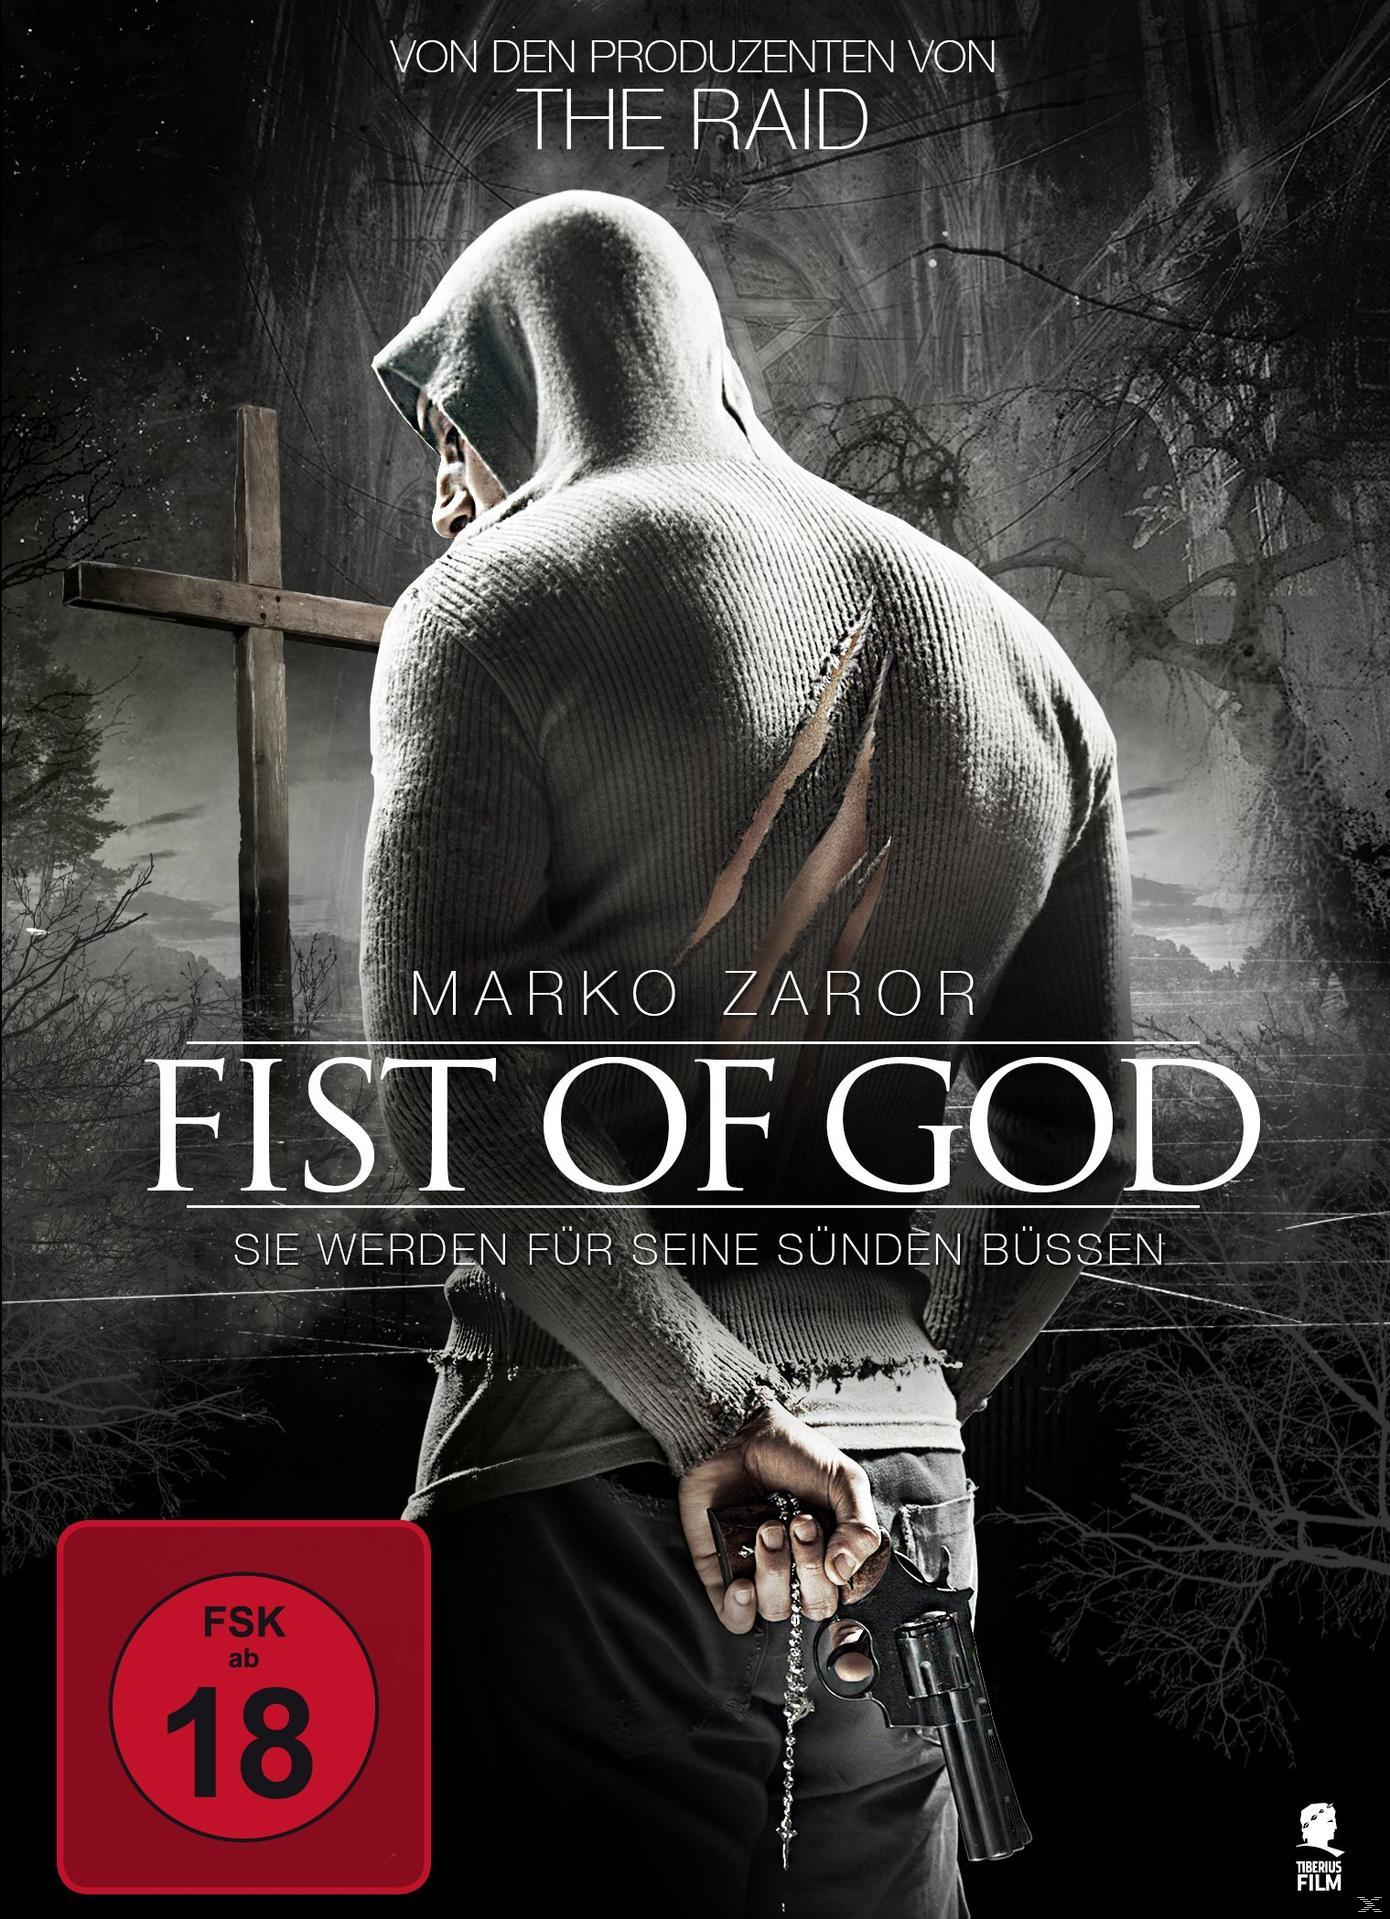 seine für büßen werden of God - Fist Sie DVD Sünden